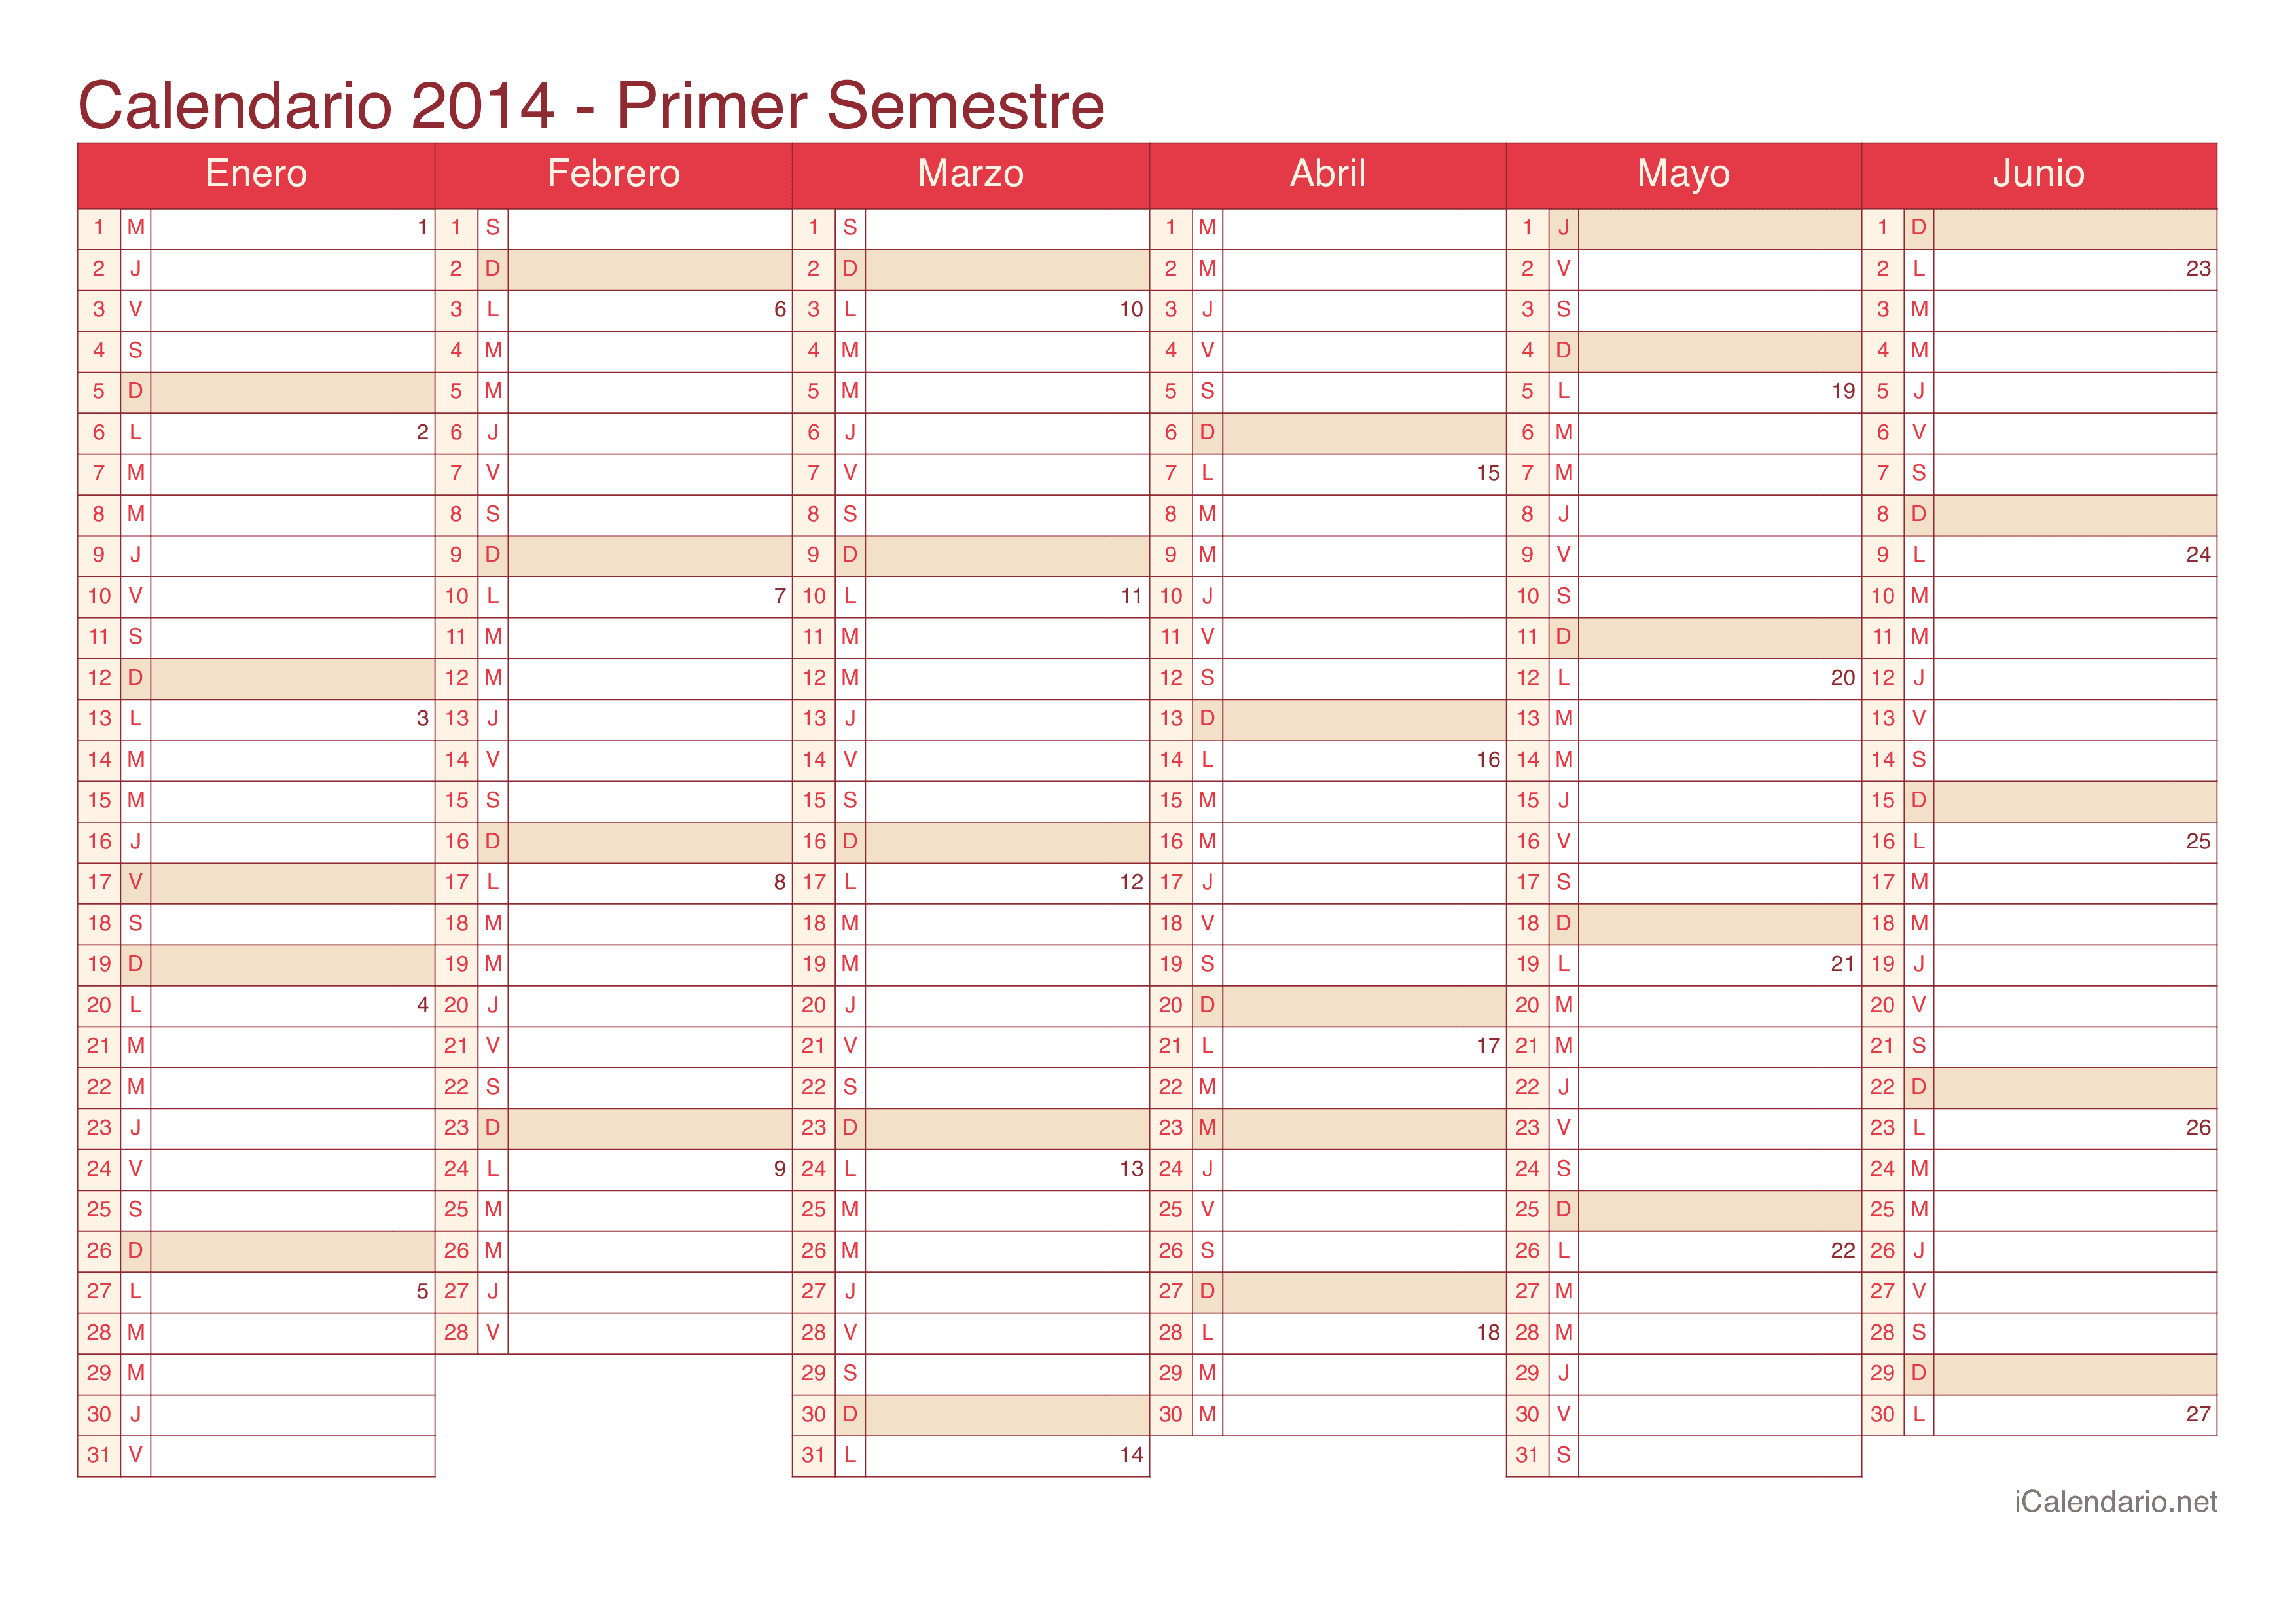 Calendario por semestre com números da semana 2014 - Cherry